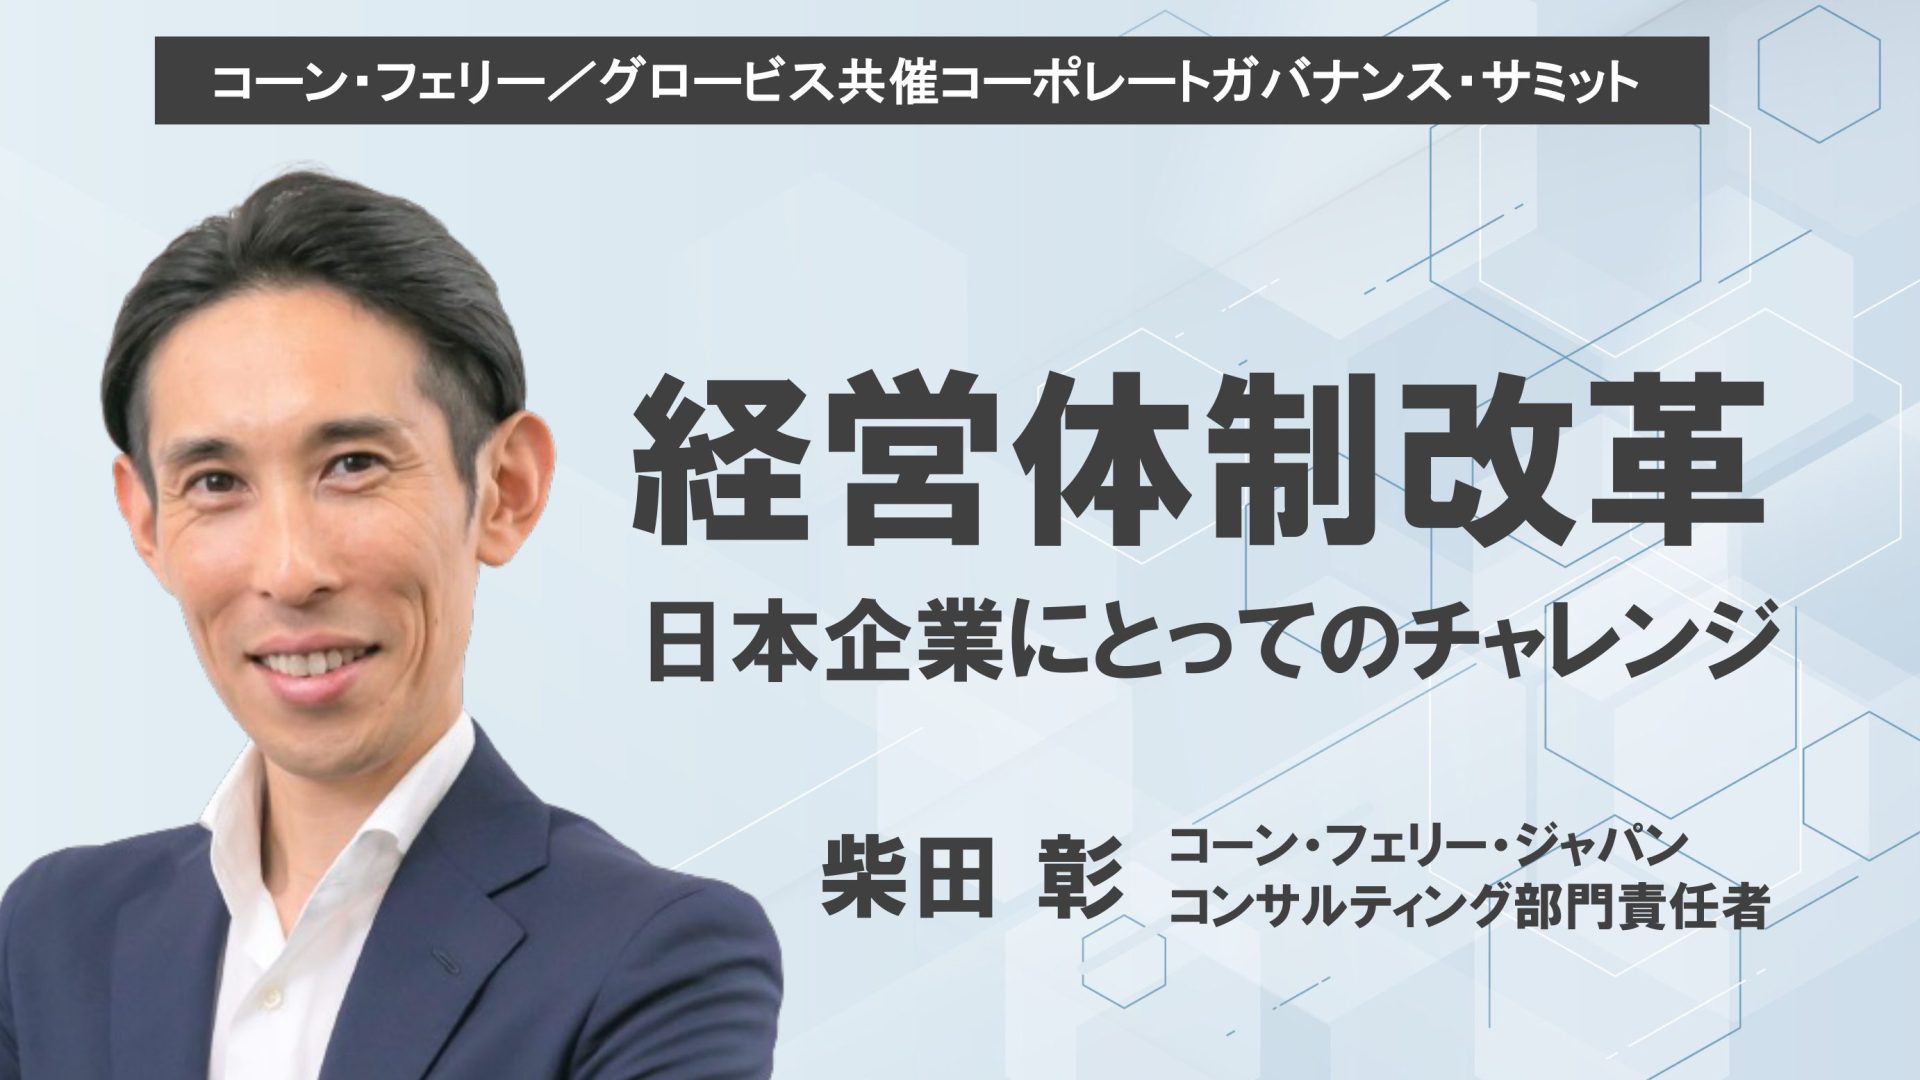 経営体制改革〜日本企業にとってのチャレンジ〜コーン・フェリー・ジャパン柴田彰